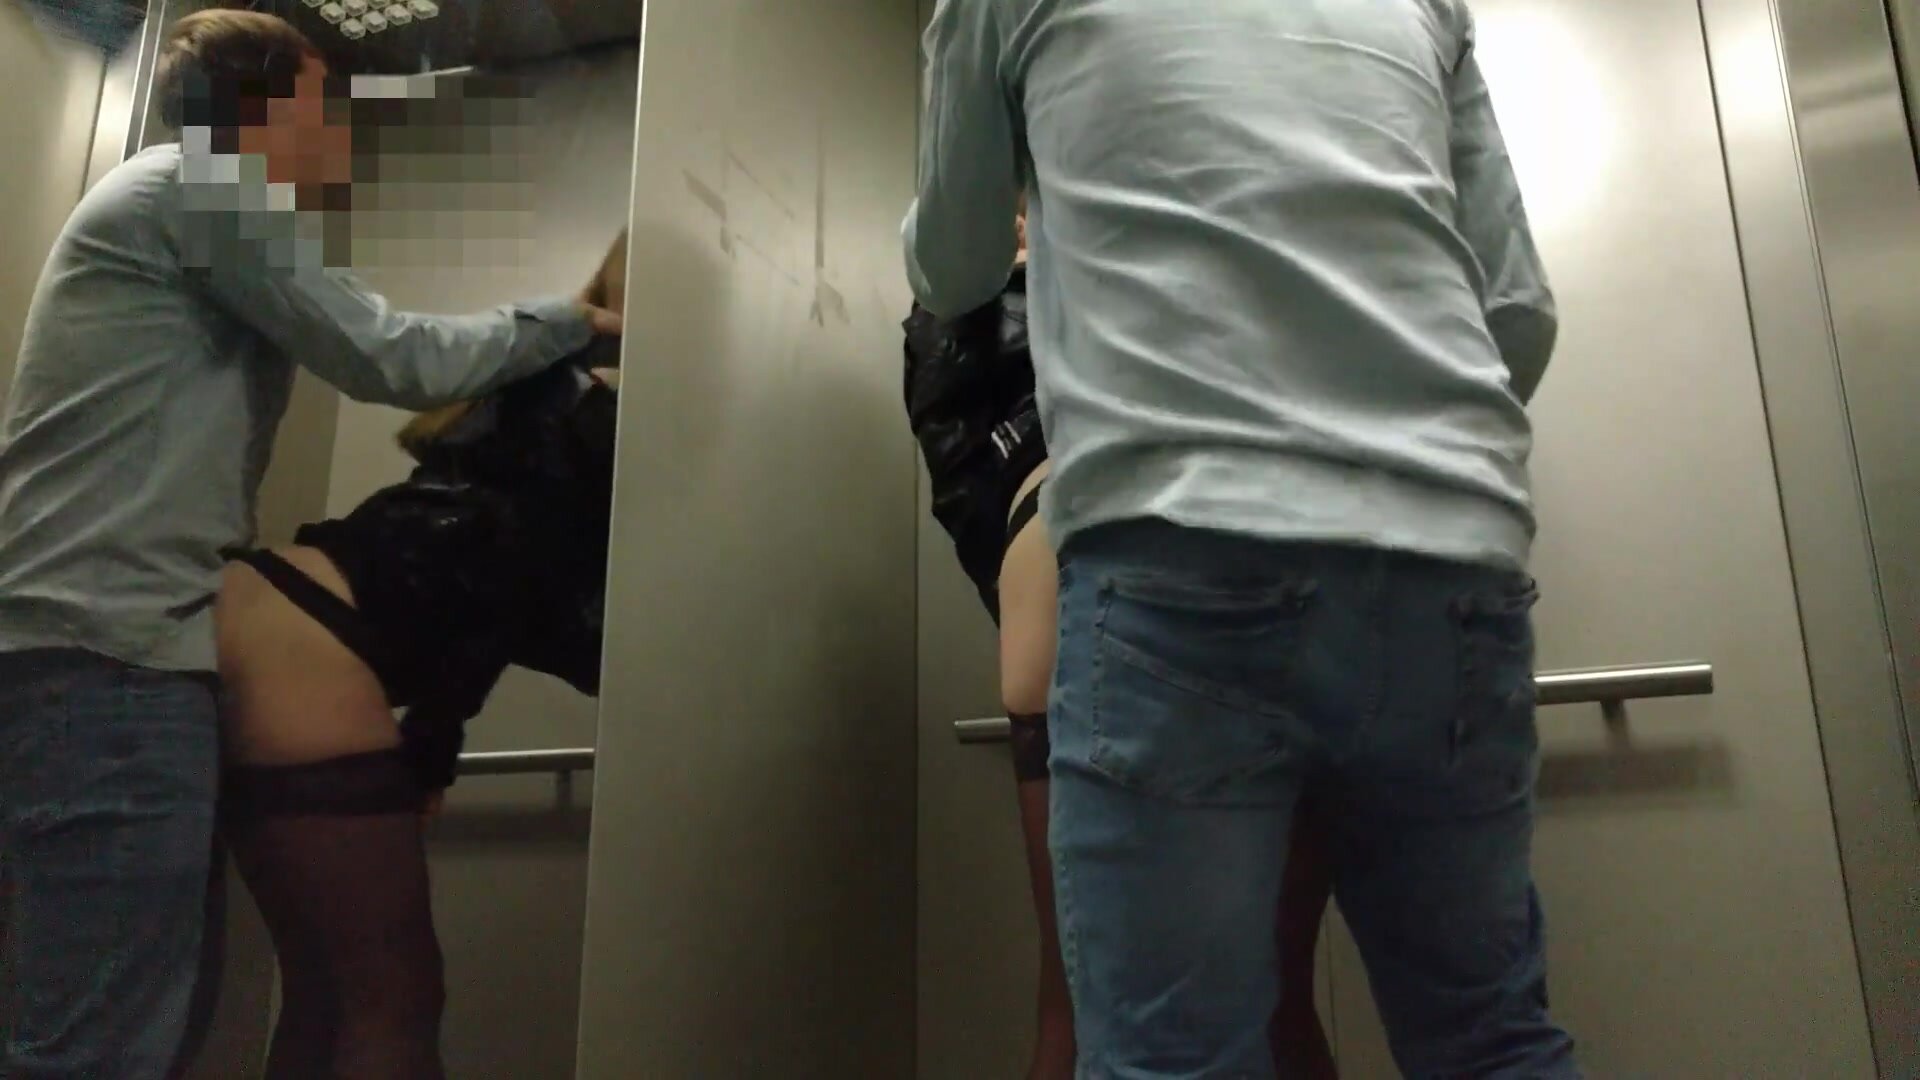 Un couple de voyeurs fait du sexe en public à risque dans un ascenseur